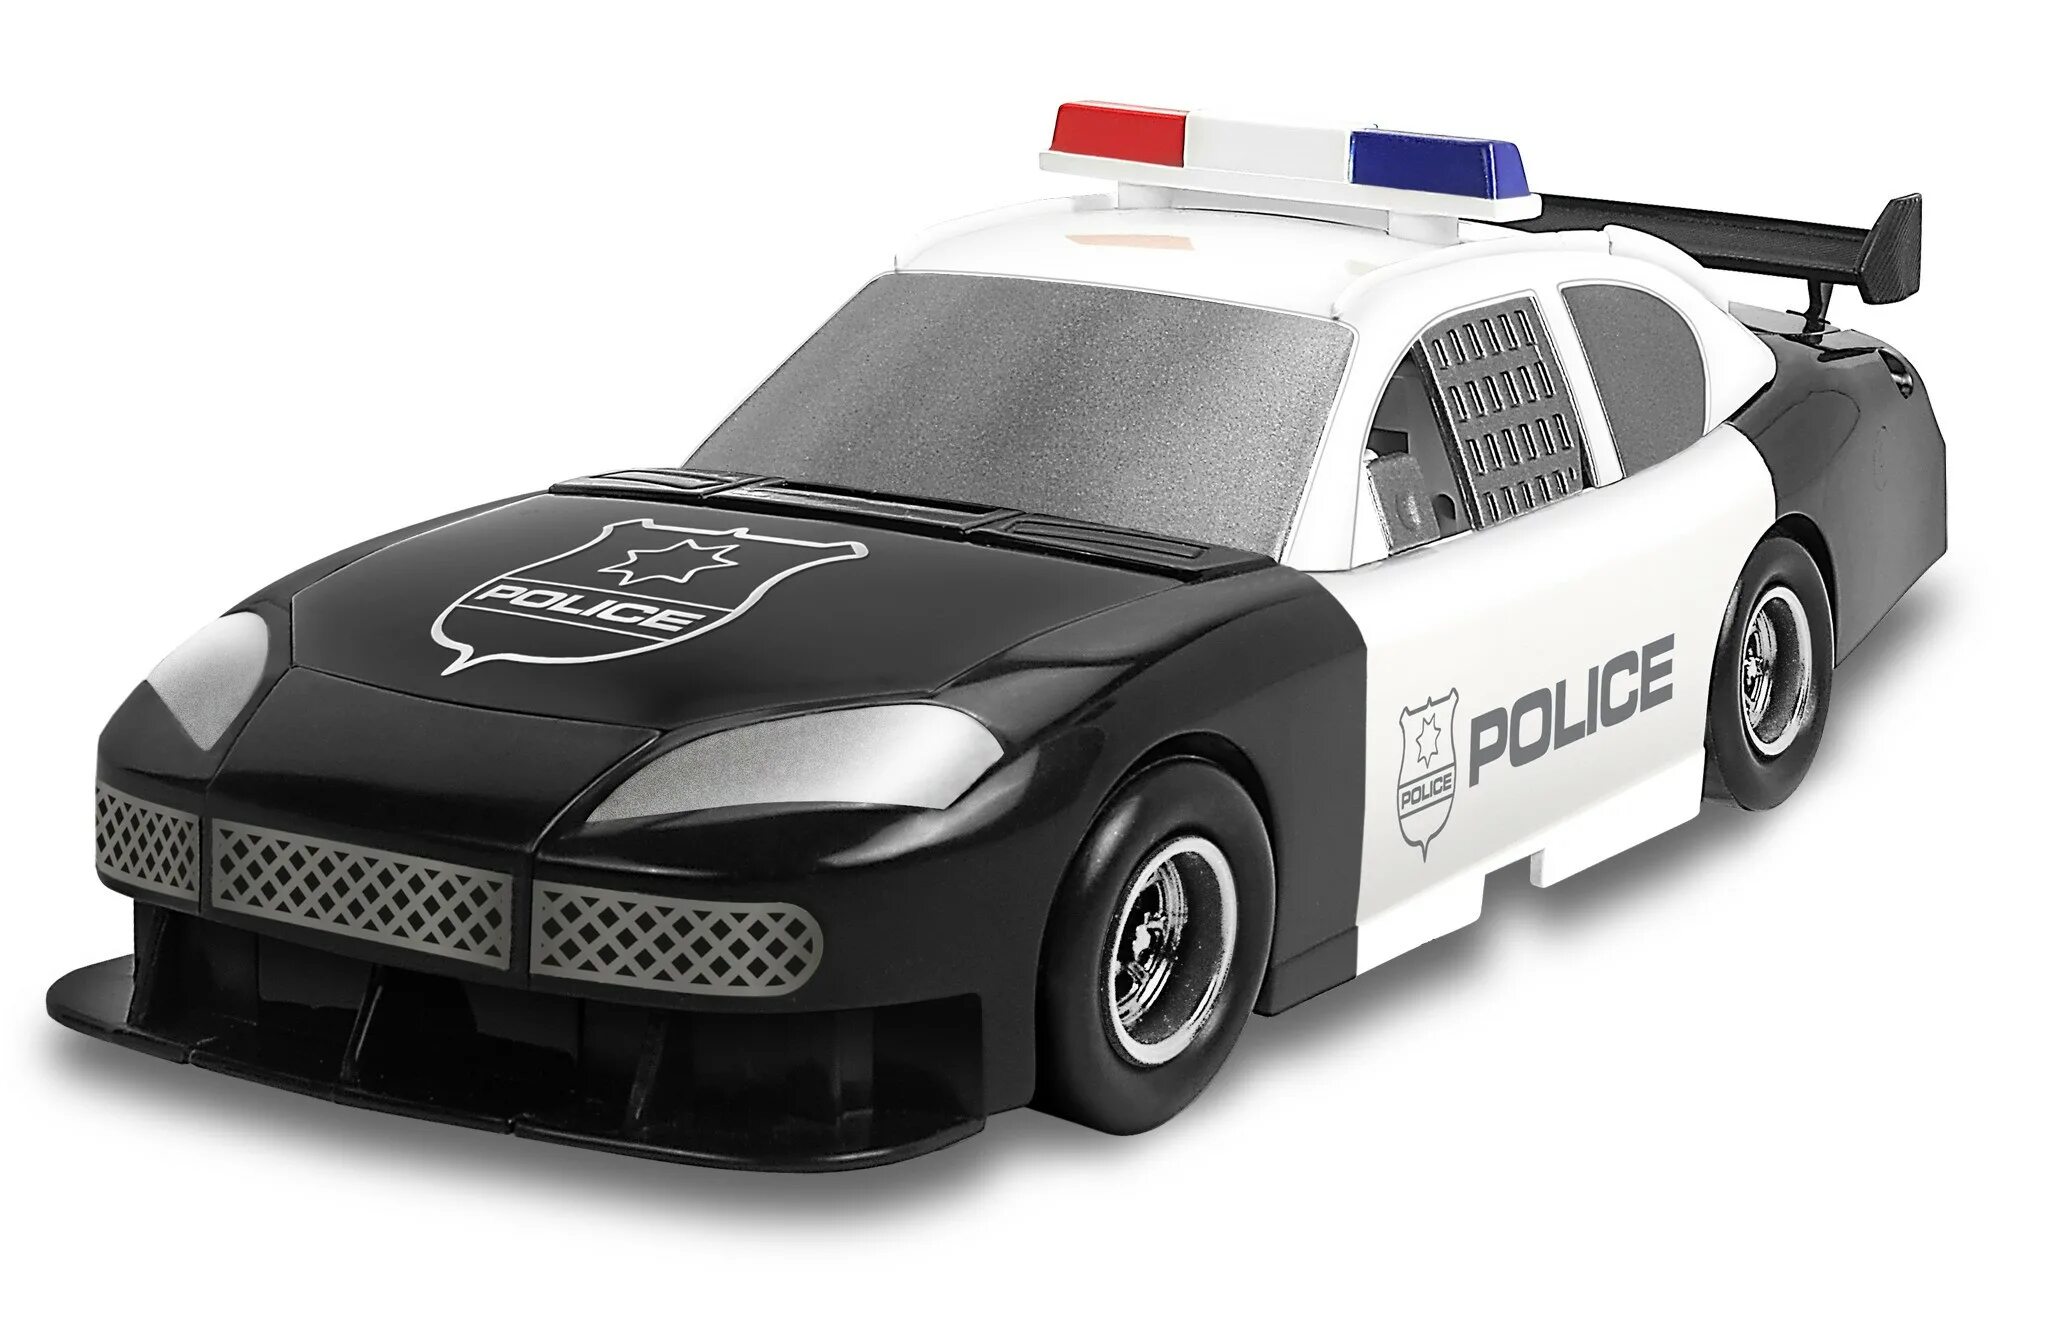 Трансформер полицейская машина. Трансформер Happy well Police car 80030. Bandai 2011 машина трансформер. Bandai машинка 2011 Полицейская трансформер. Робот полицейский игрушка.